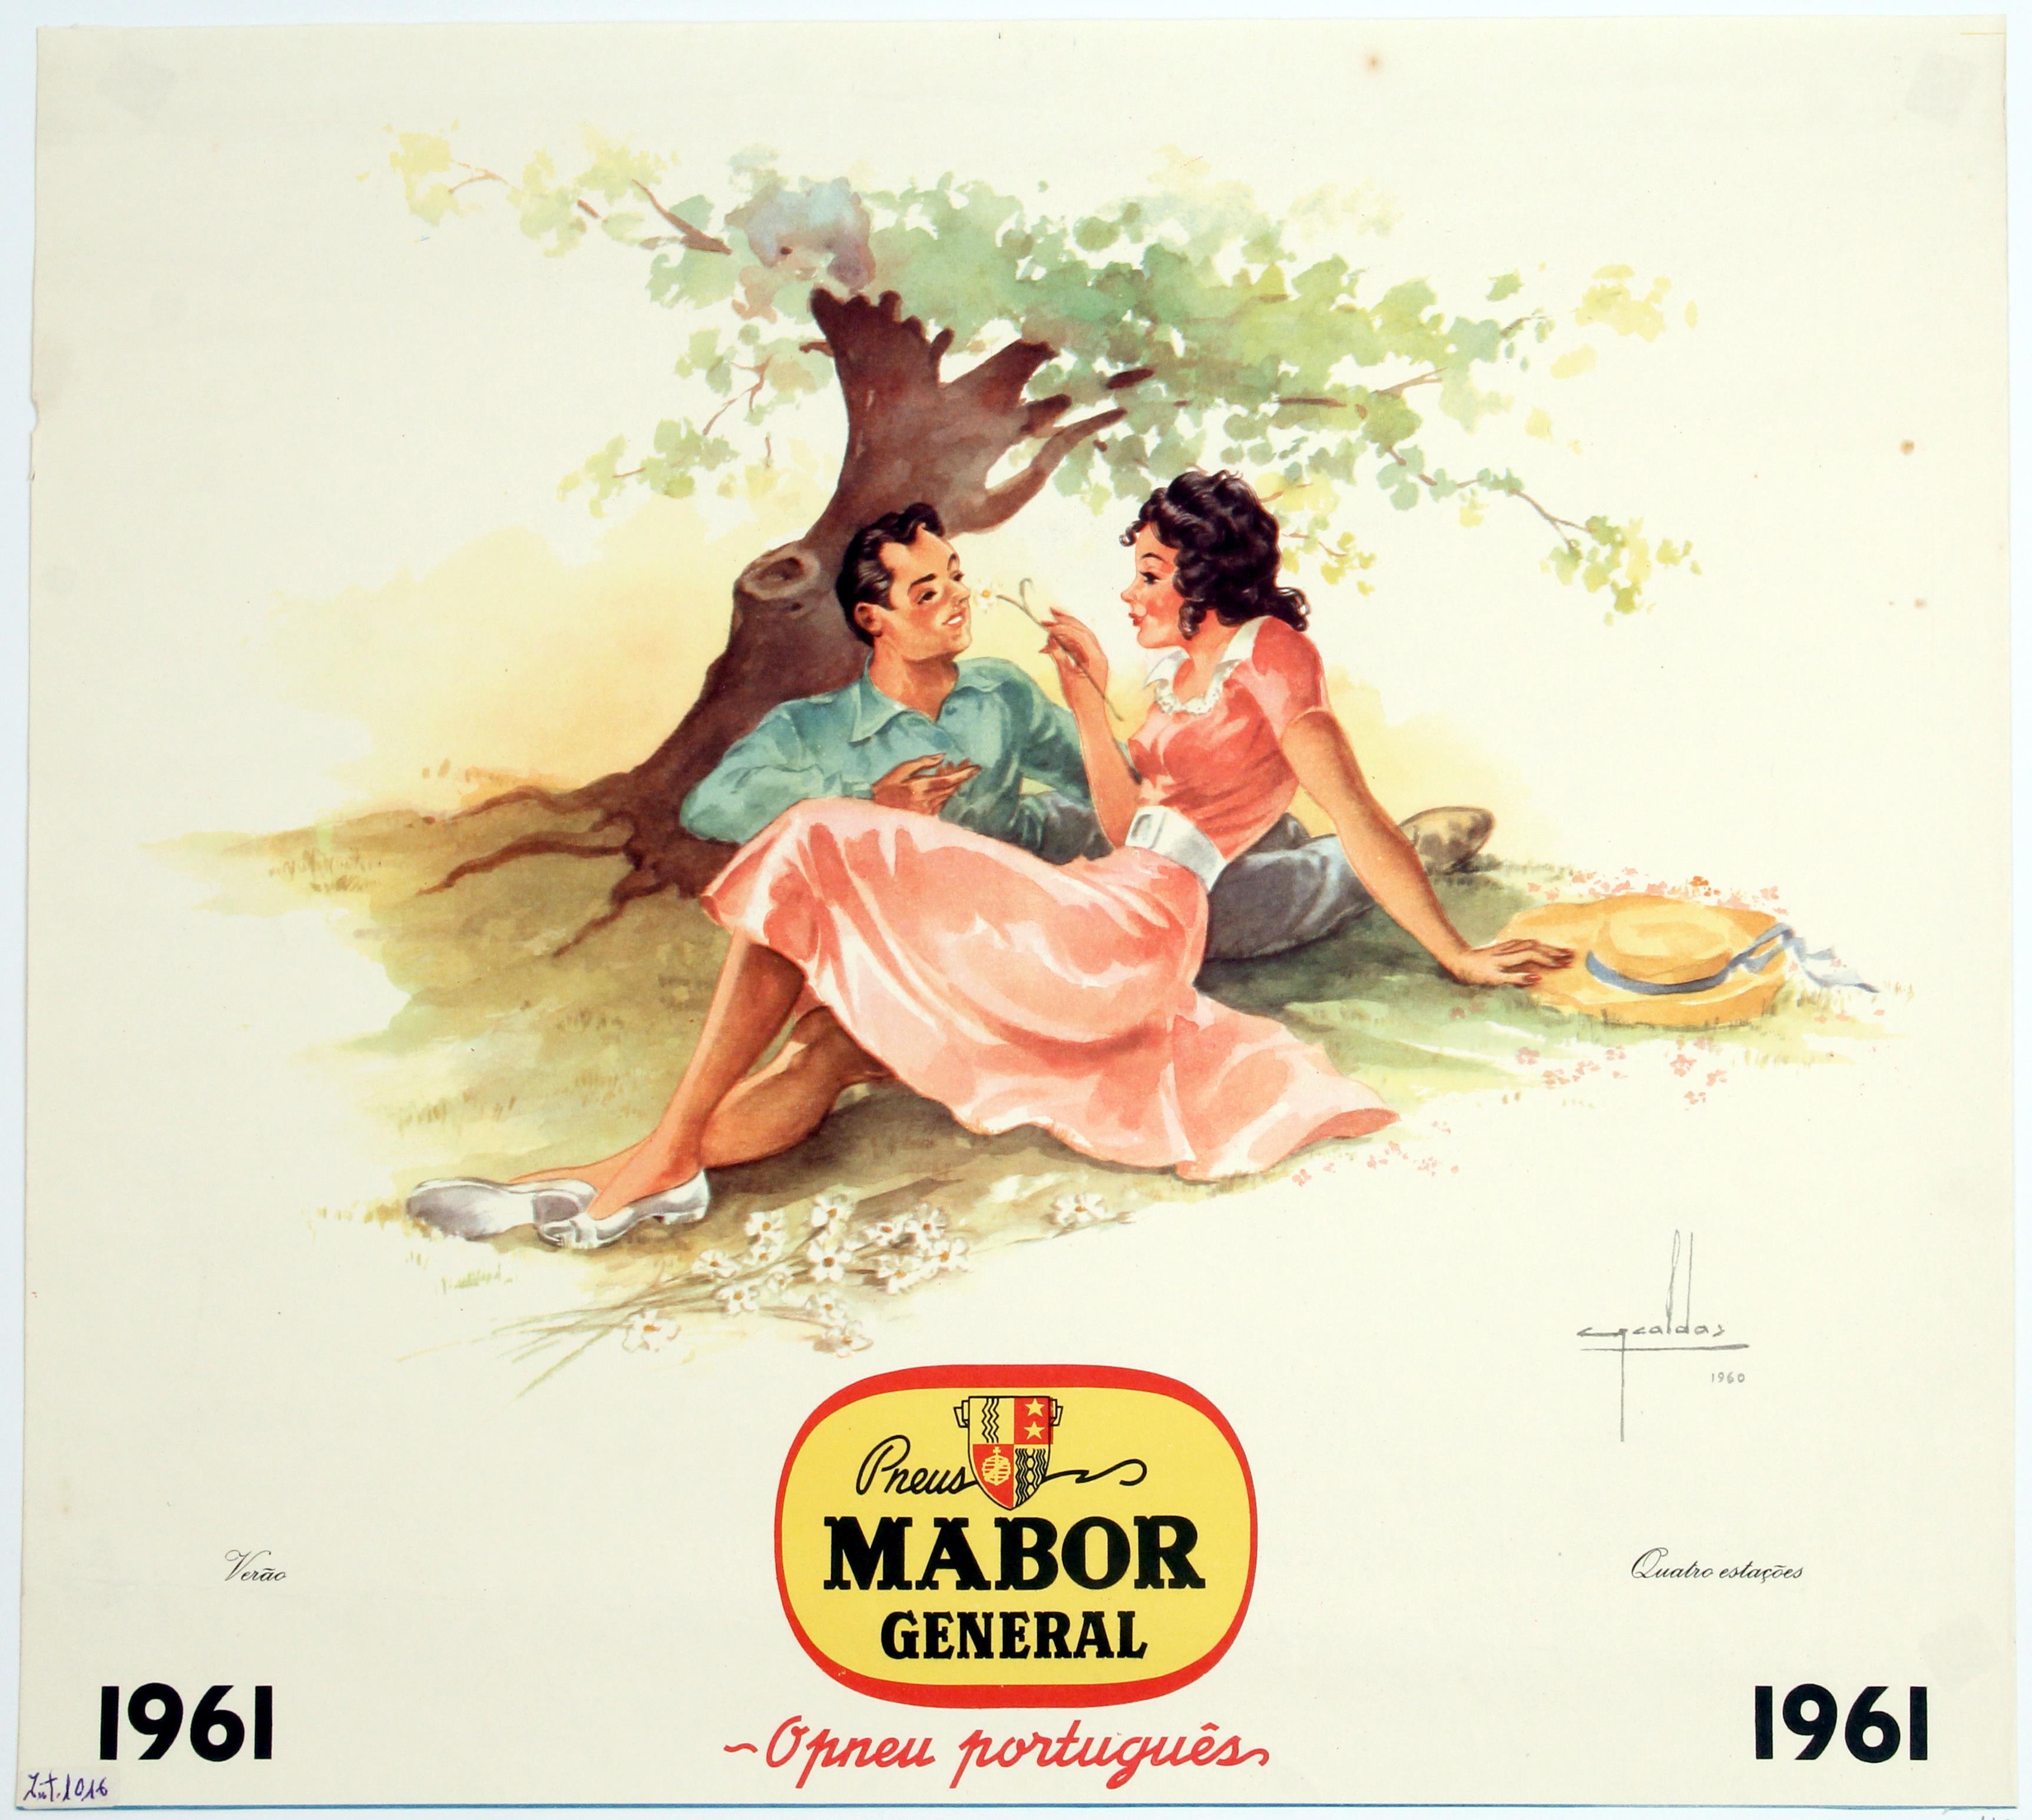 Cartaz de propaganda quatro estações : pneus Mabor General : o pneu português : Verão